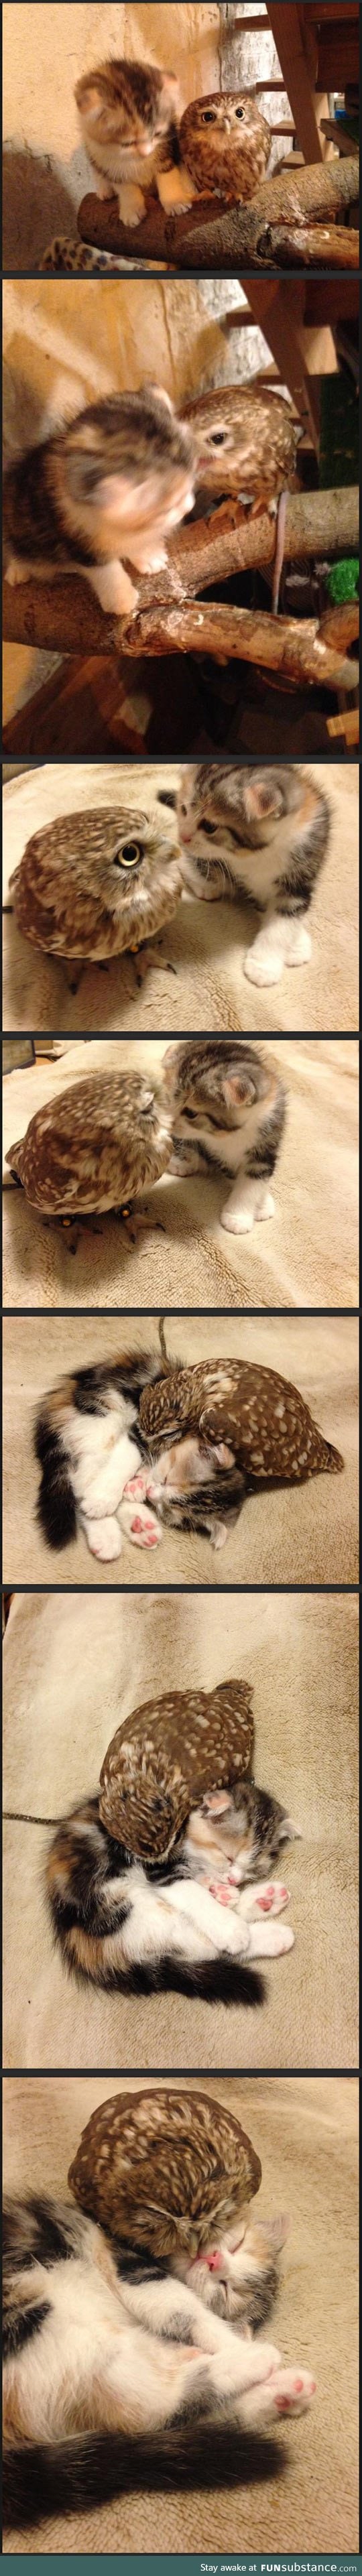 Kitten and owlet